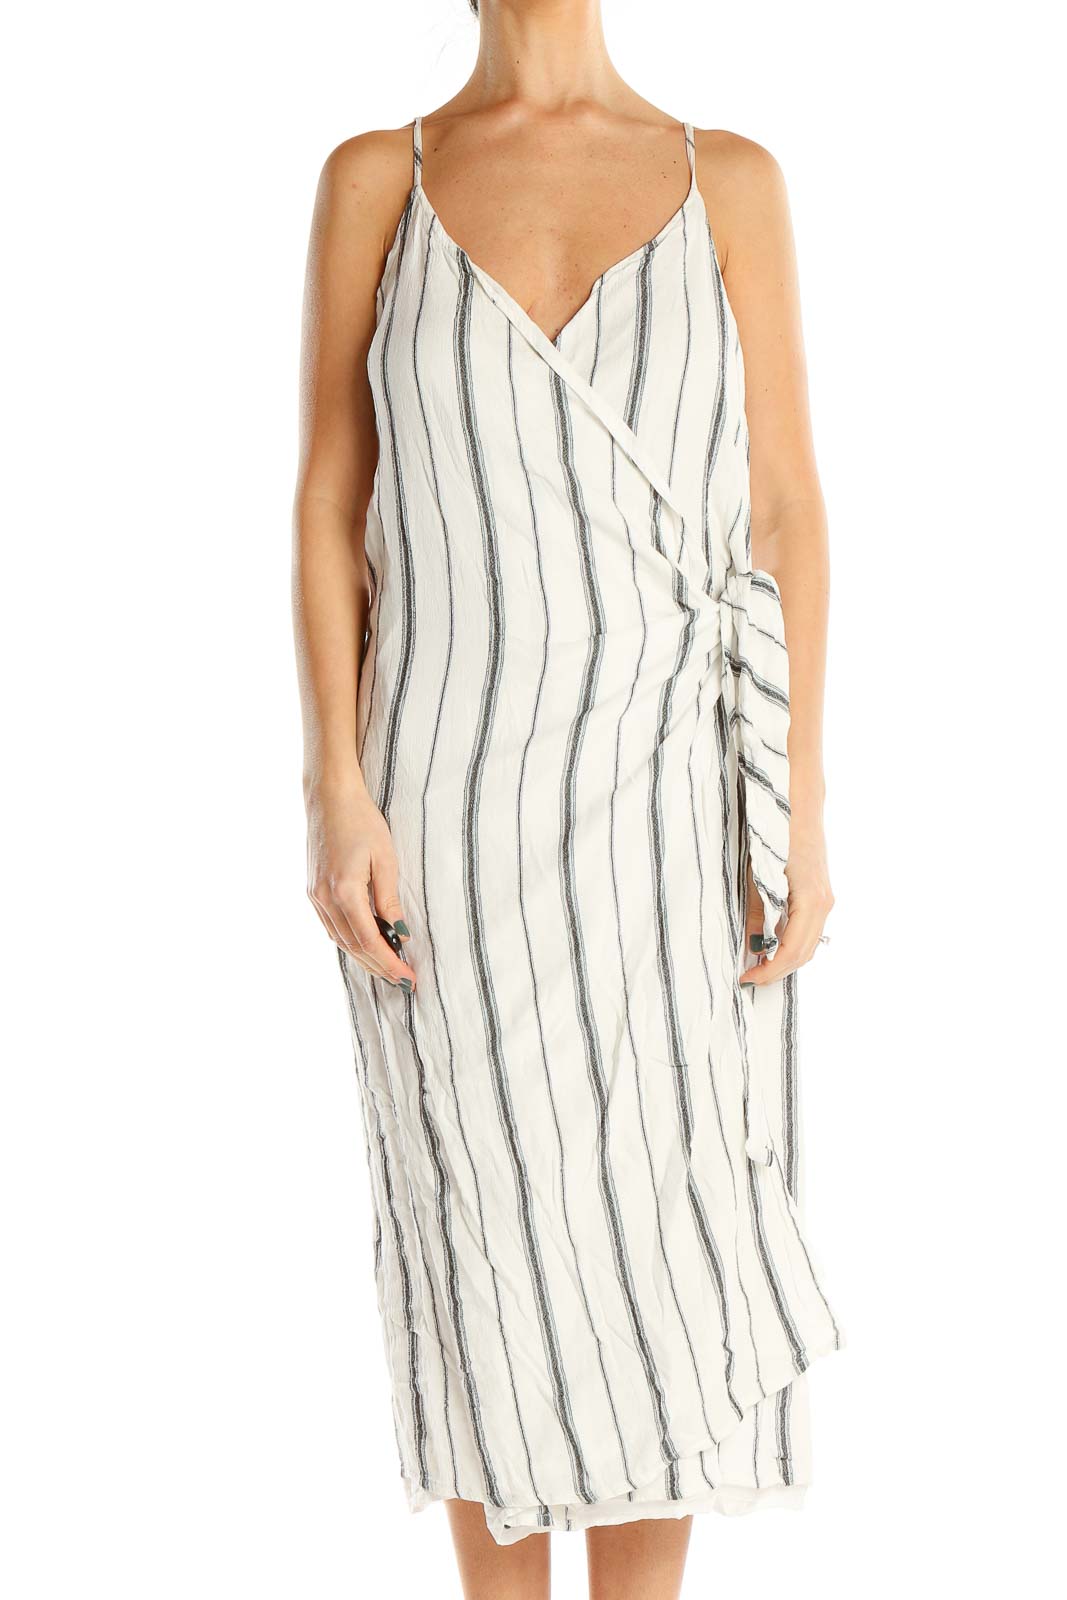 White Gray Striped Wrap Dress Front